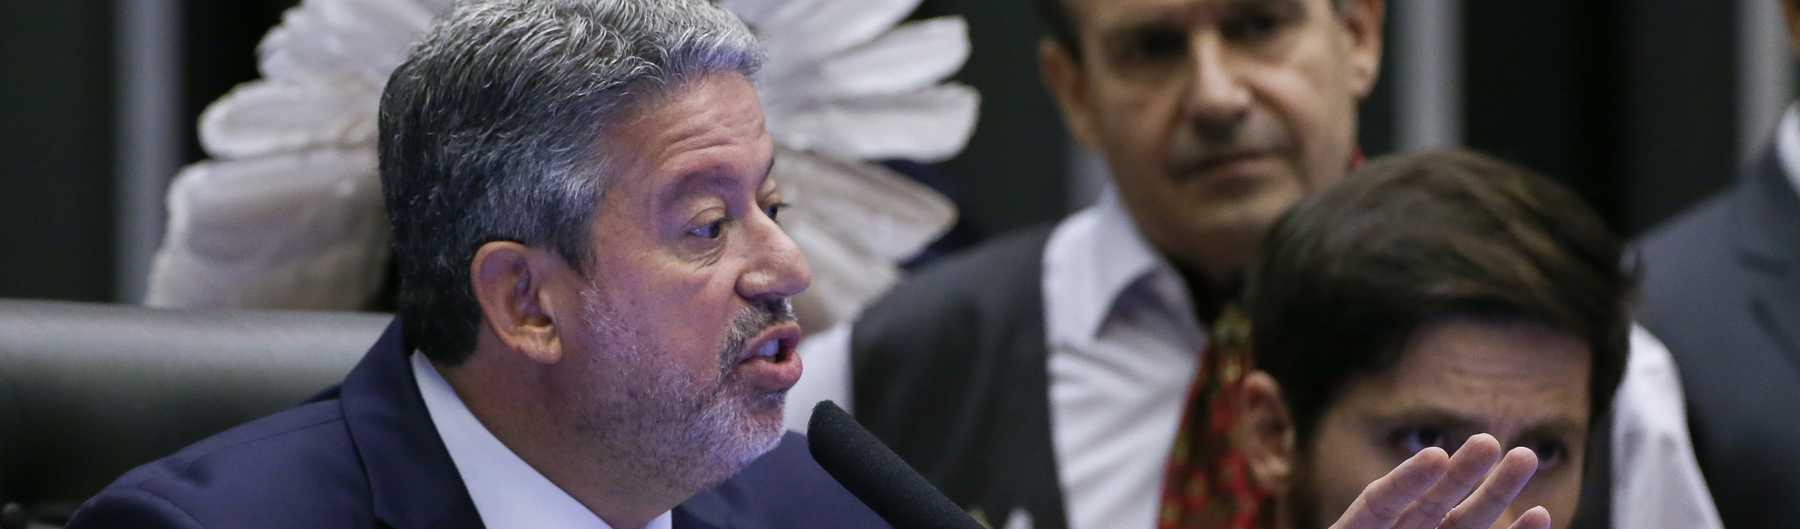 Grande mídia comemora chantagens de Lira ao Governo Lula, mas maior derrotado é o Brasil